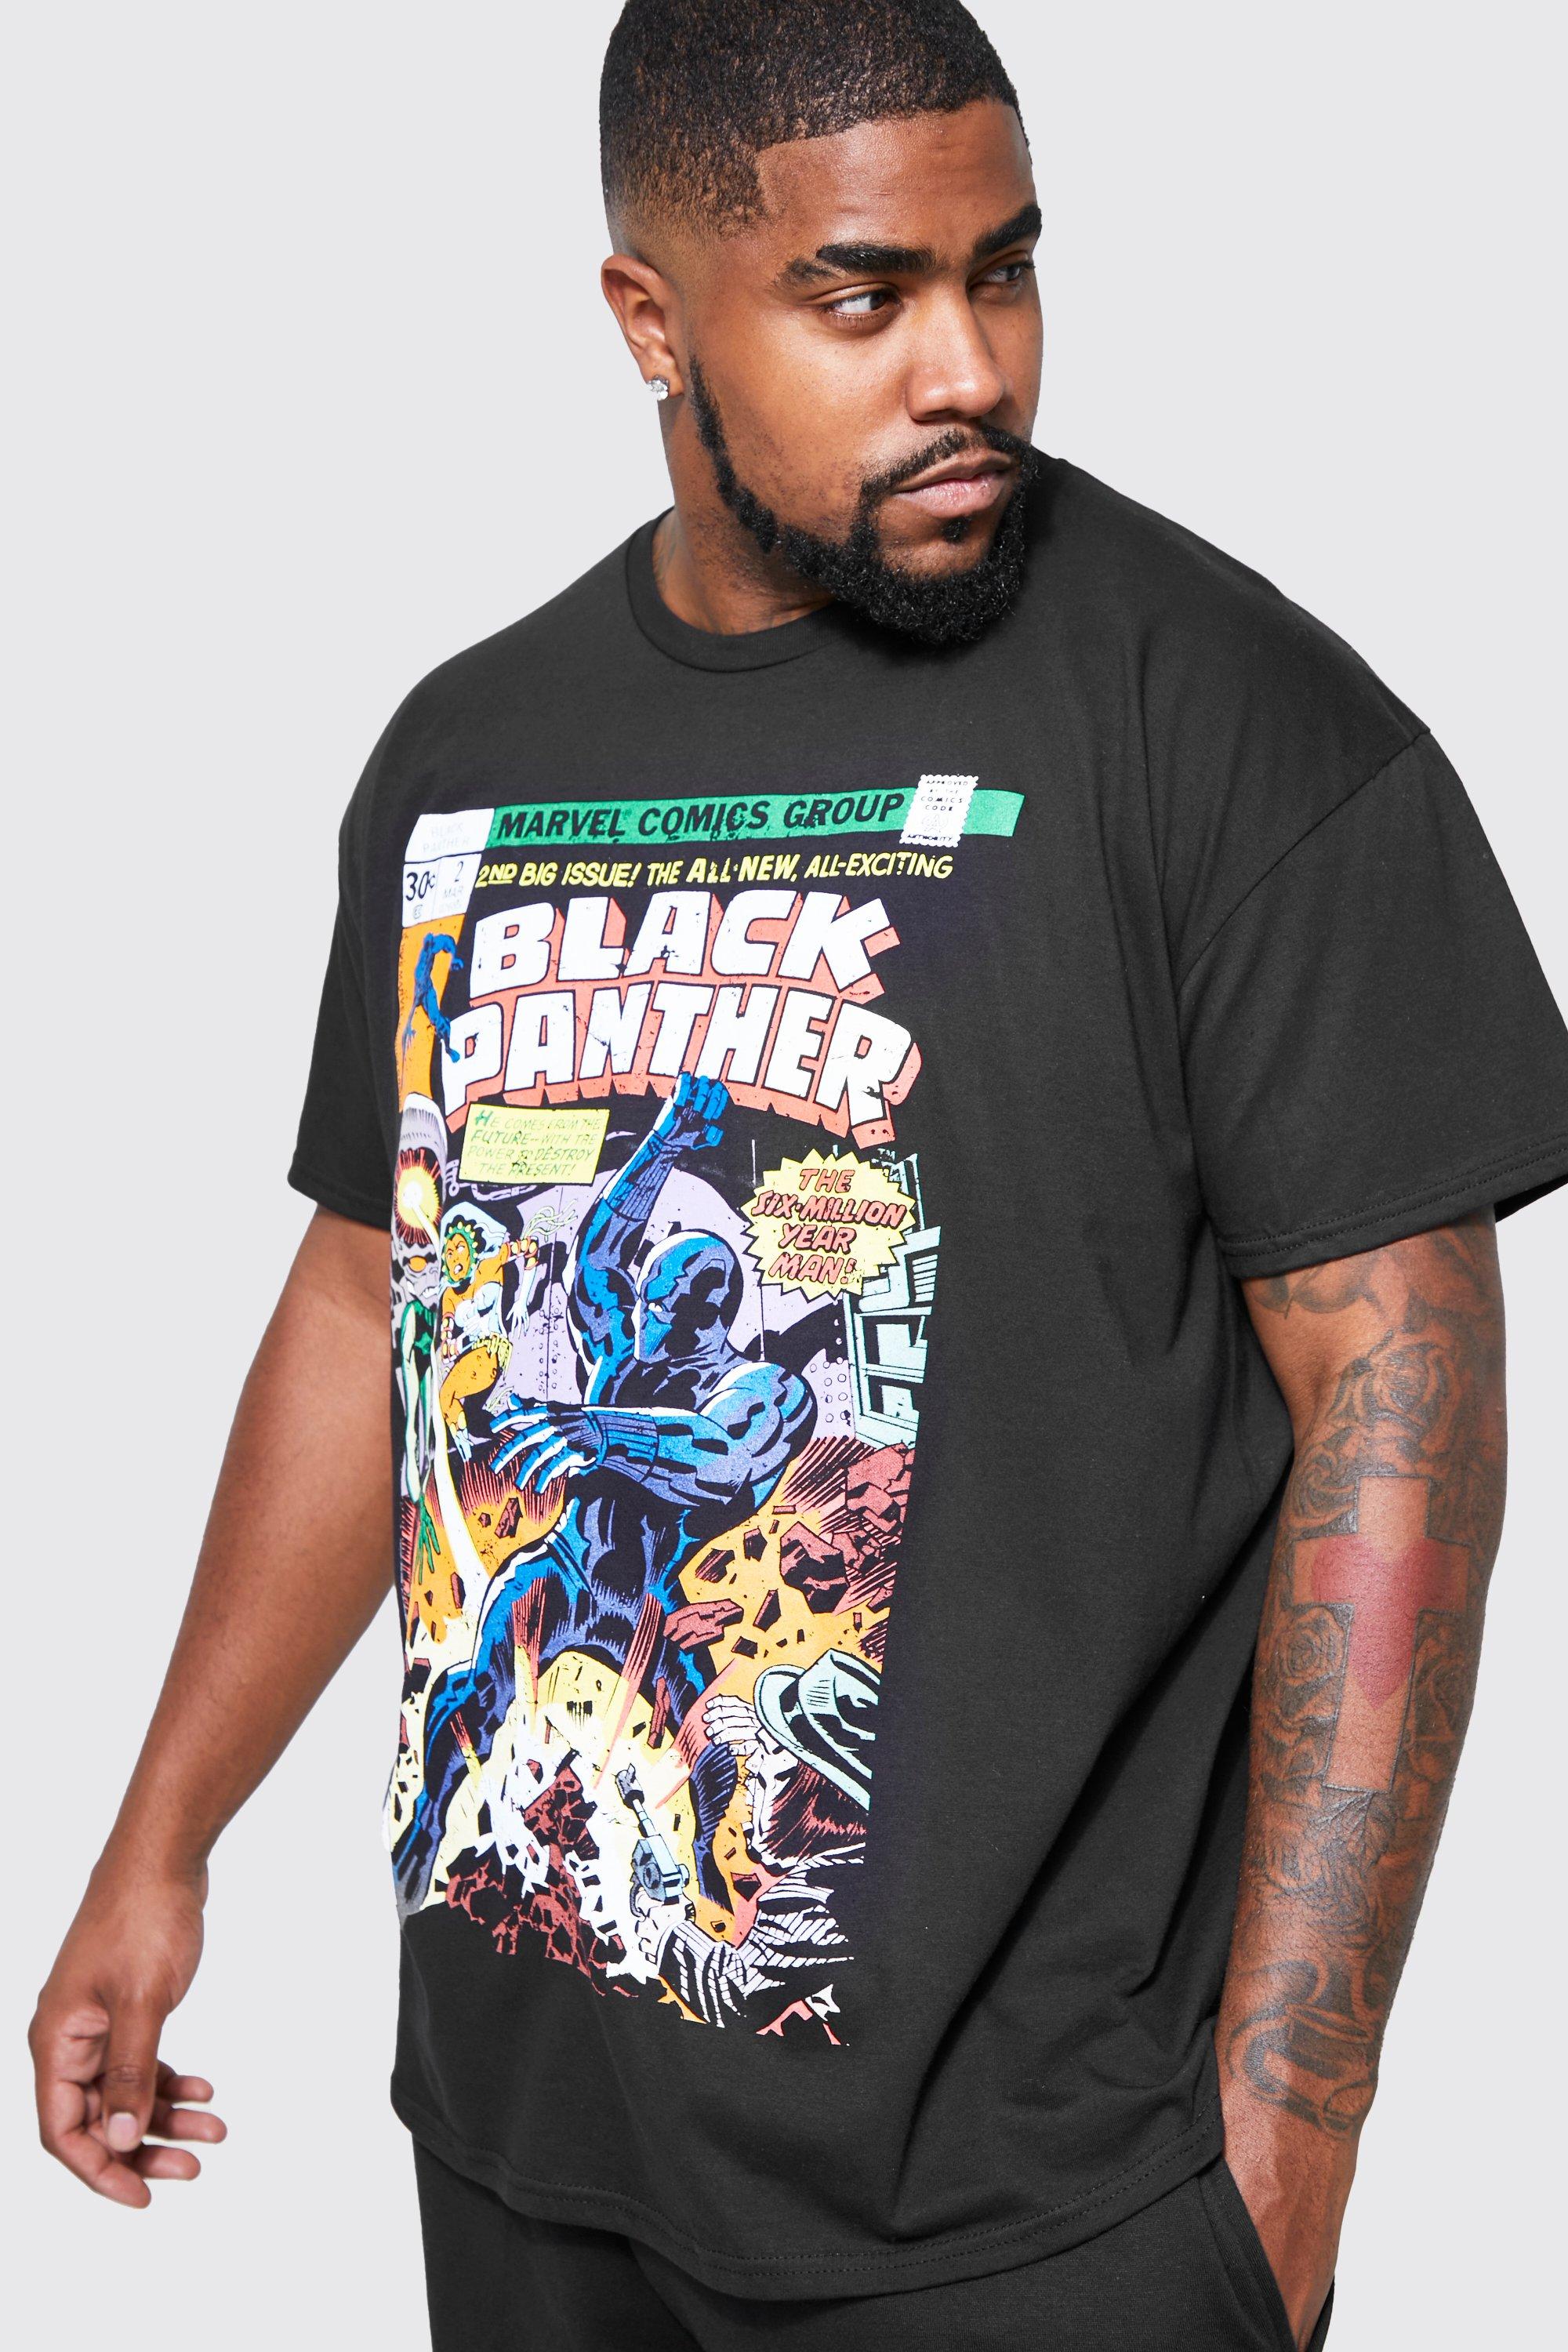 MARVEL COMICS Black Panther Men's Black on Black Face T-Shirt Small Black